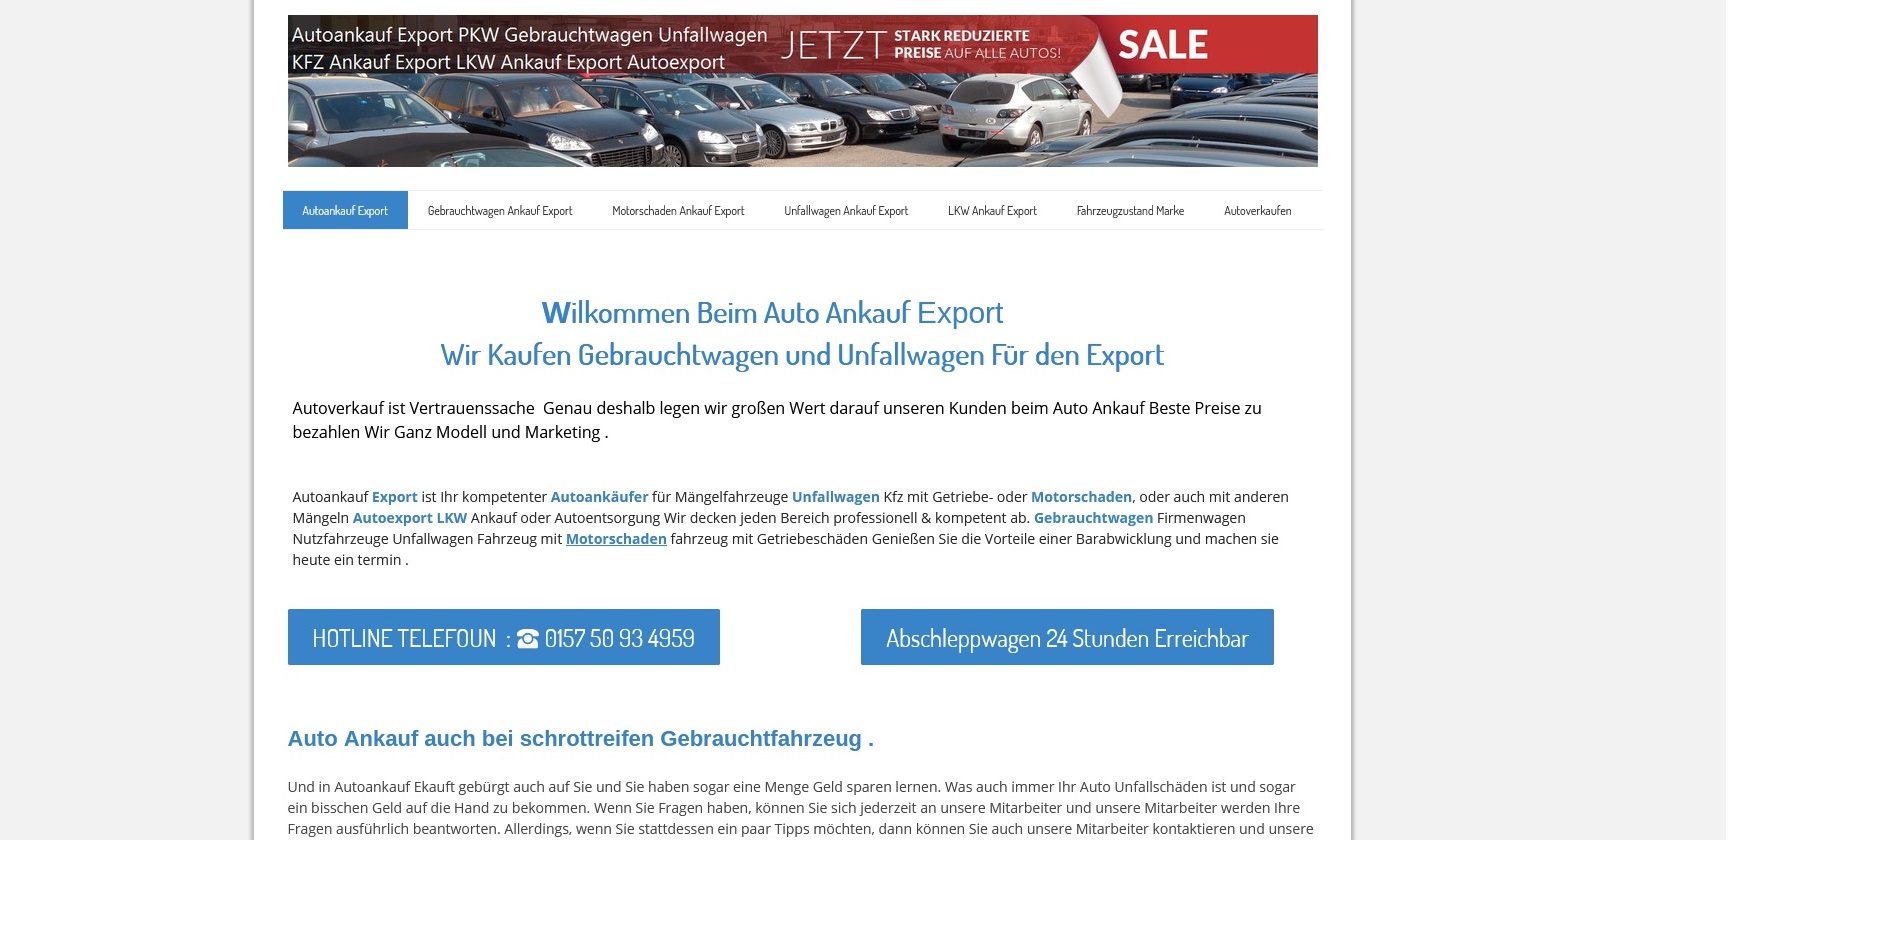 Kfz-Ankauf-export.de | Autoankauf Reutlingen | Autoankauf Export Reutlingen